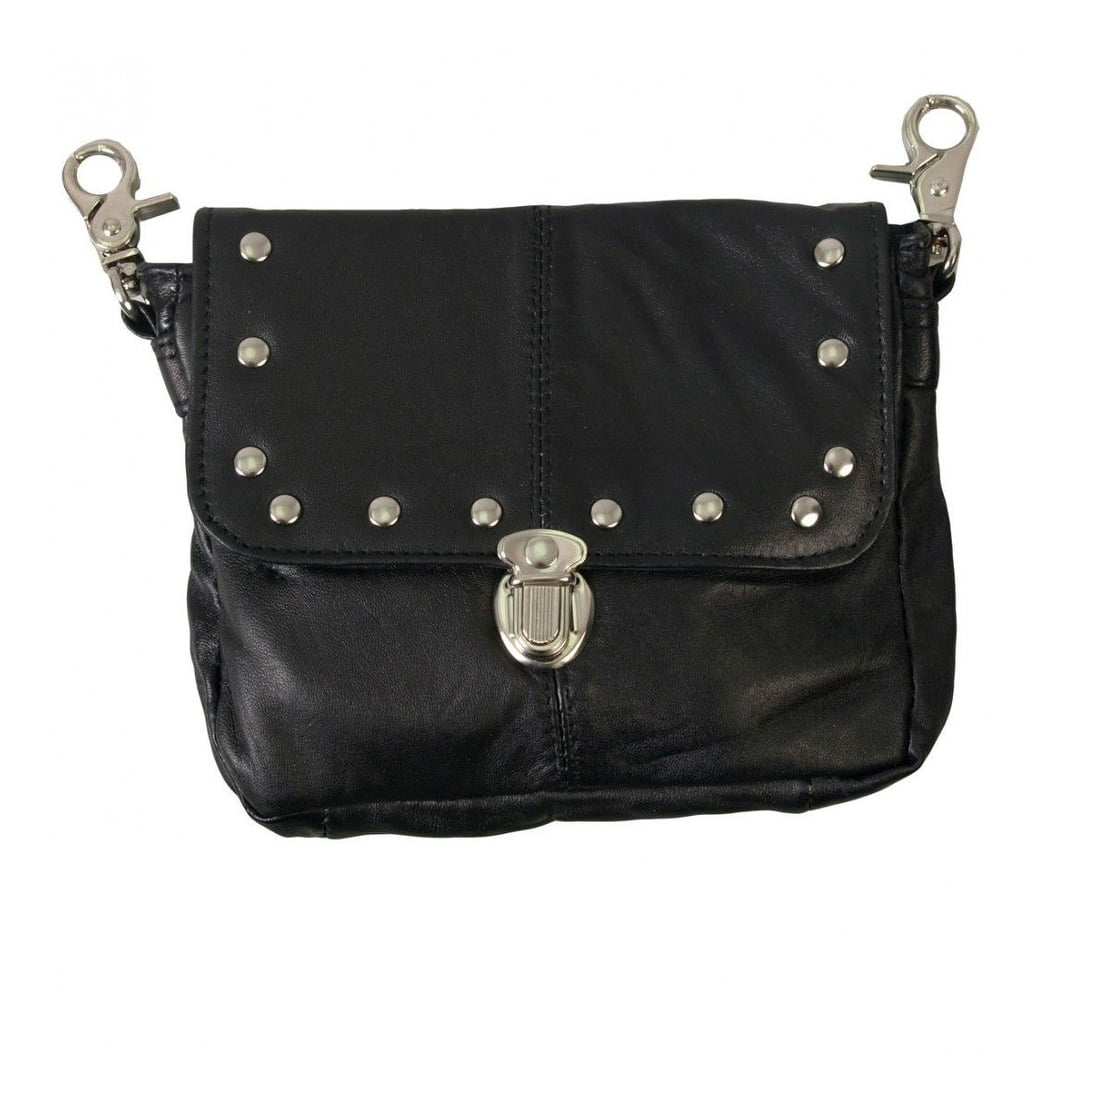 AFONiE - AFONiE Clip Pouch w/Detachable Strap Leather Crossbody Handbag - 0 - 0